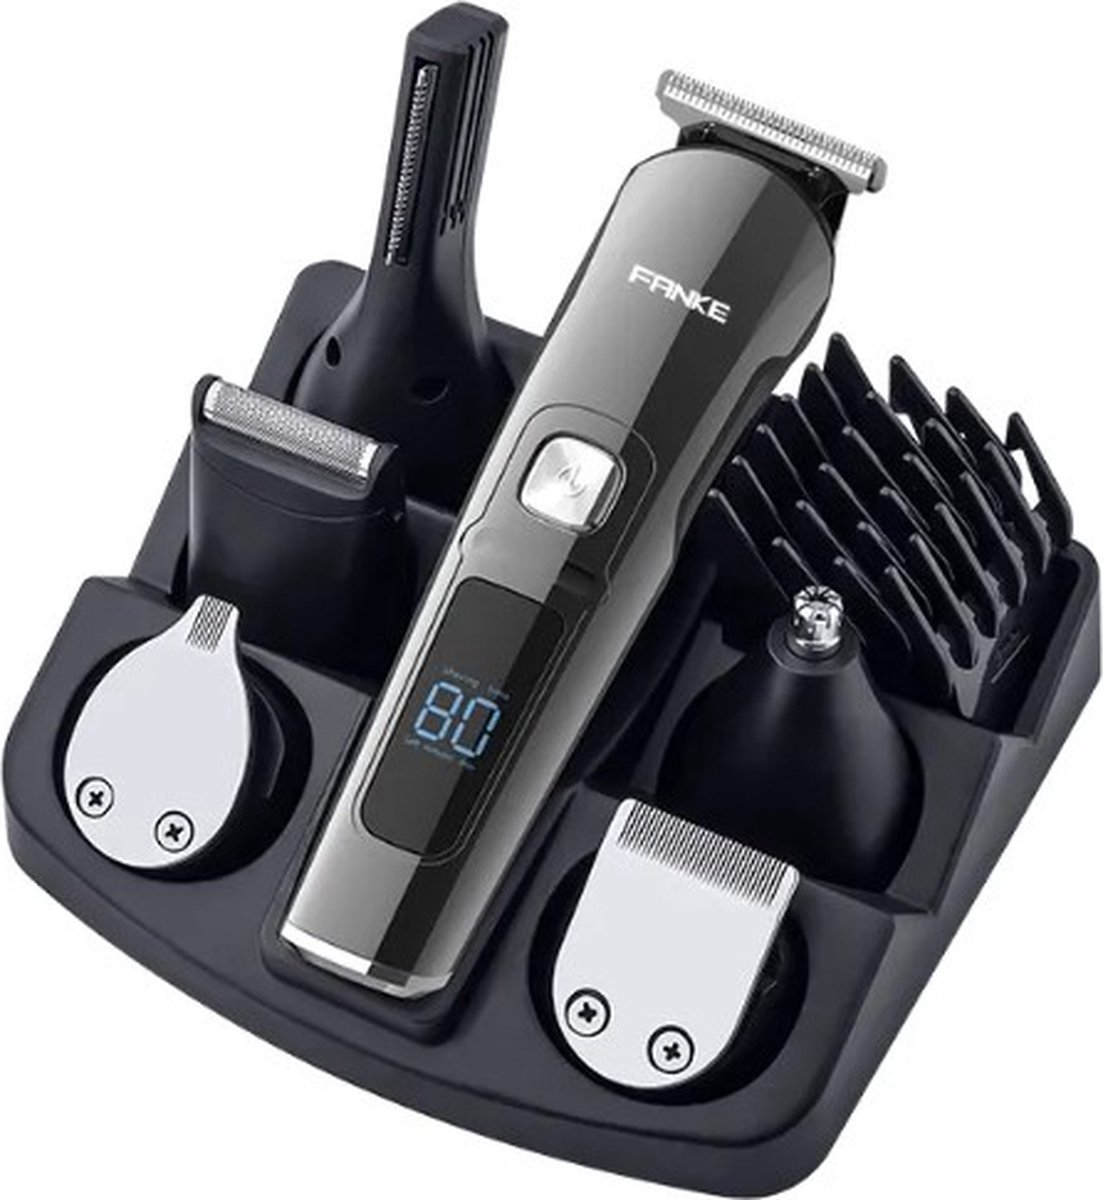 Professionele IPX7 oplaadbare baardtrimmer 11-in-1 voor mannen- trimmer voor baard en lichaam- inclusief 6 verwisselbare koppen + 5 opzetstukken 1-12mm - bodytrimmer-neus & oor trimmer- tondeuse